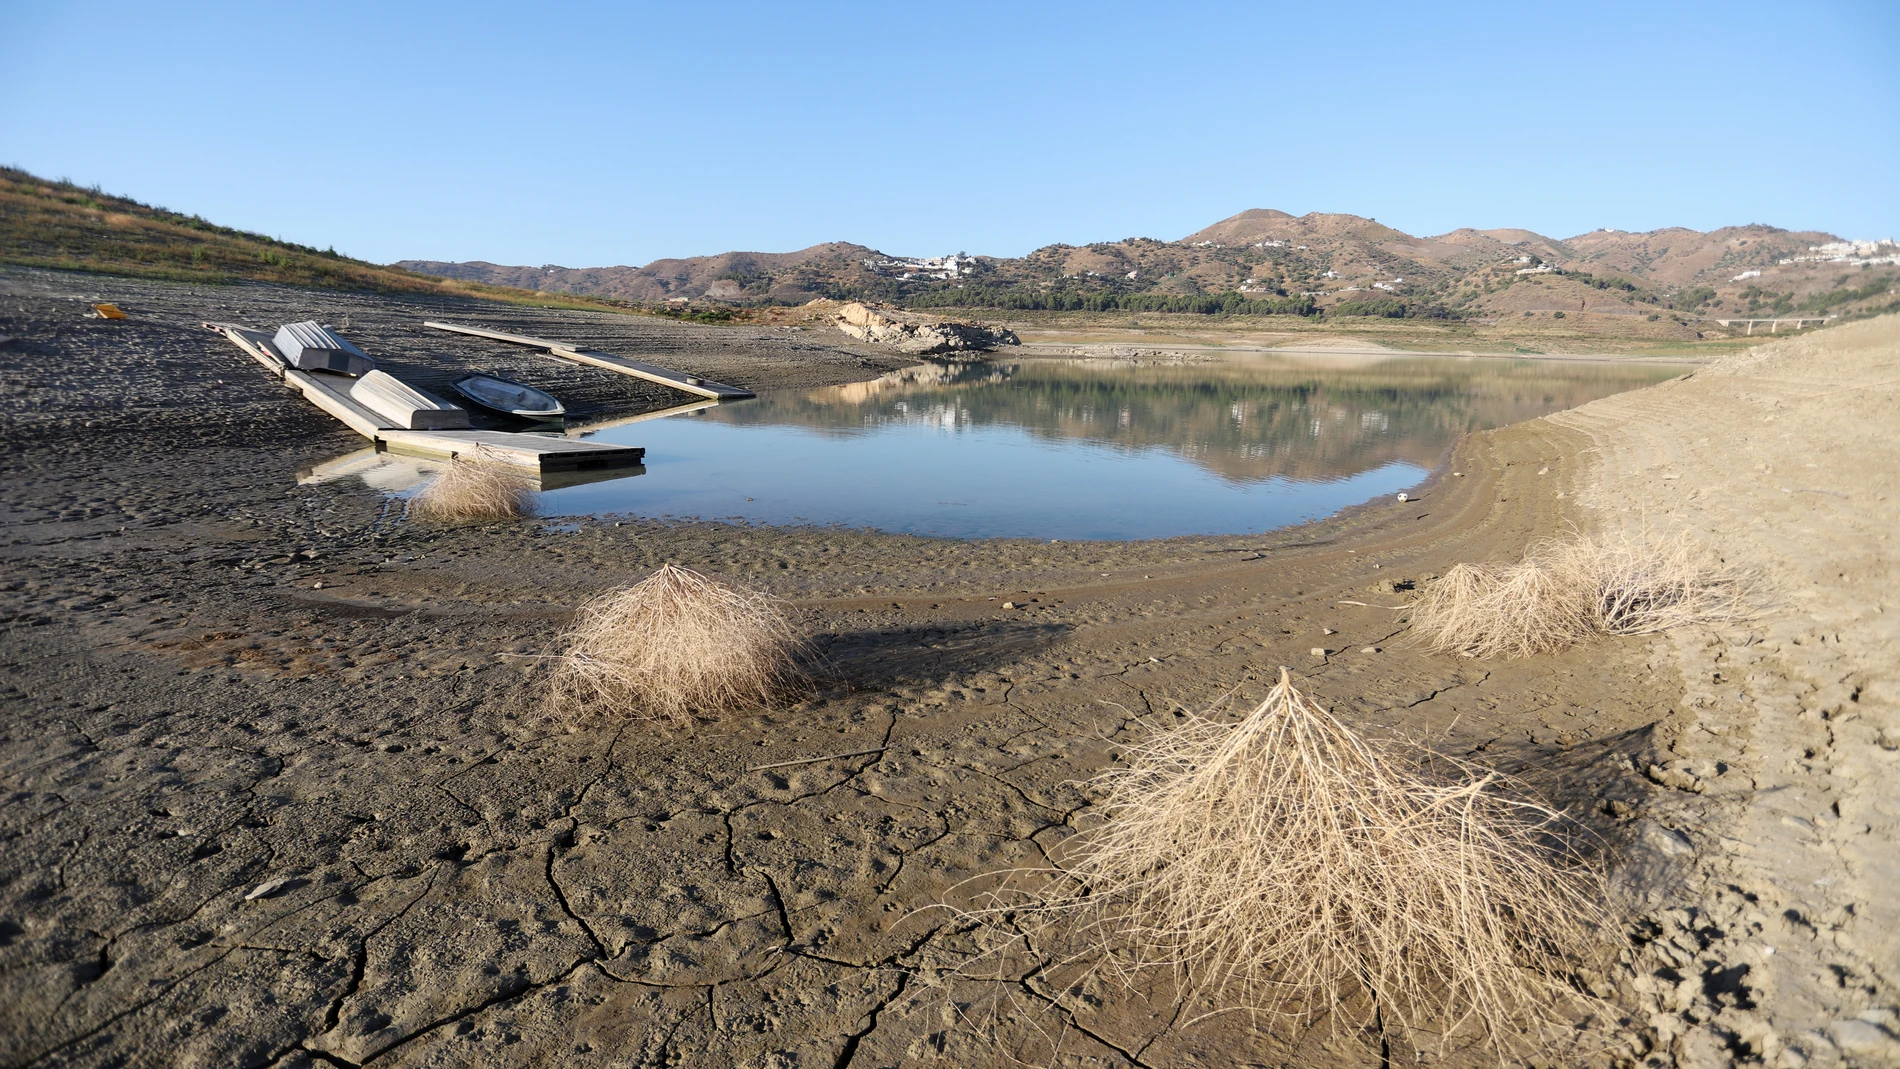 El pantano de La Viñuela, que abastece a 200.000 personas